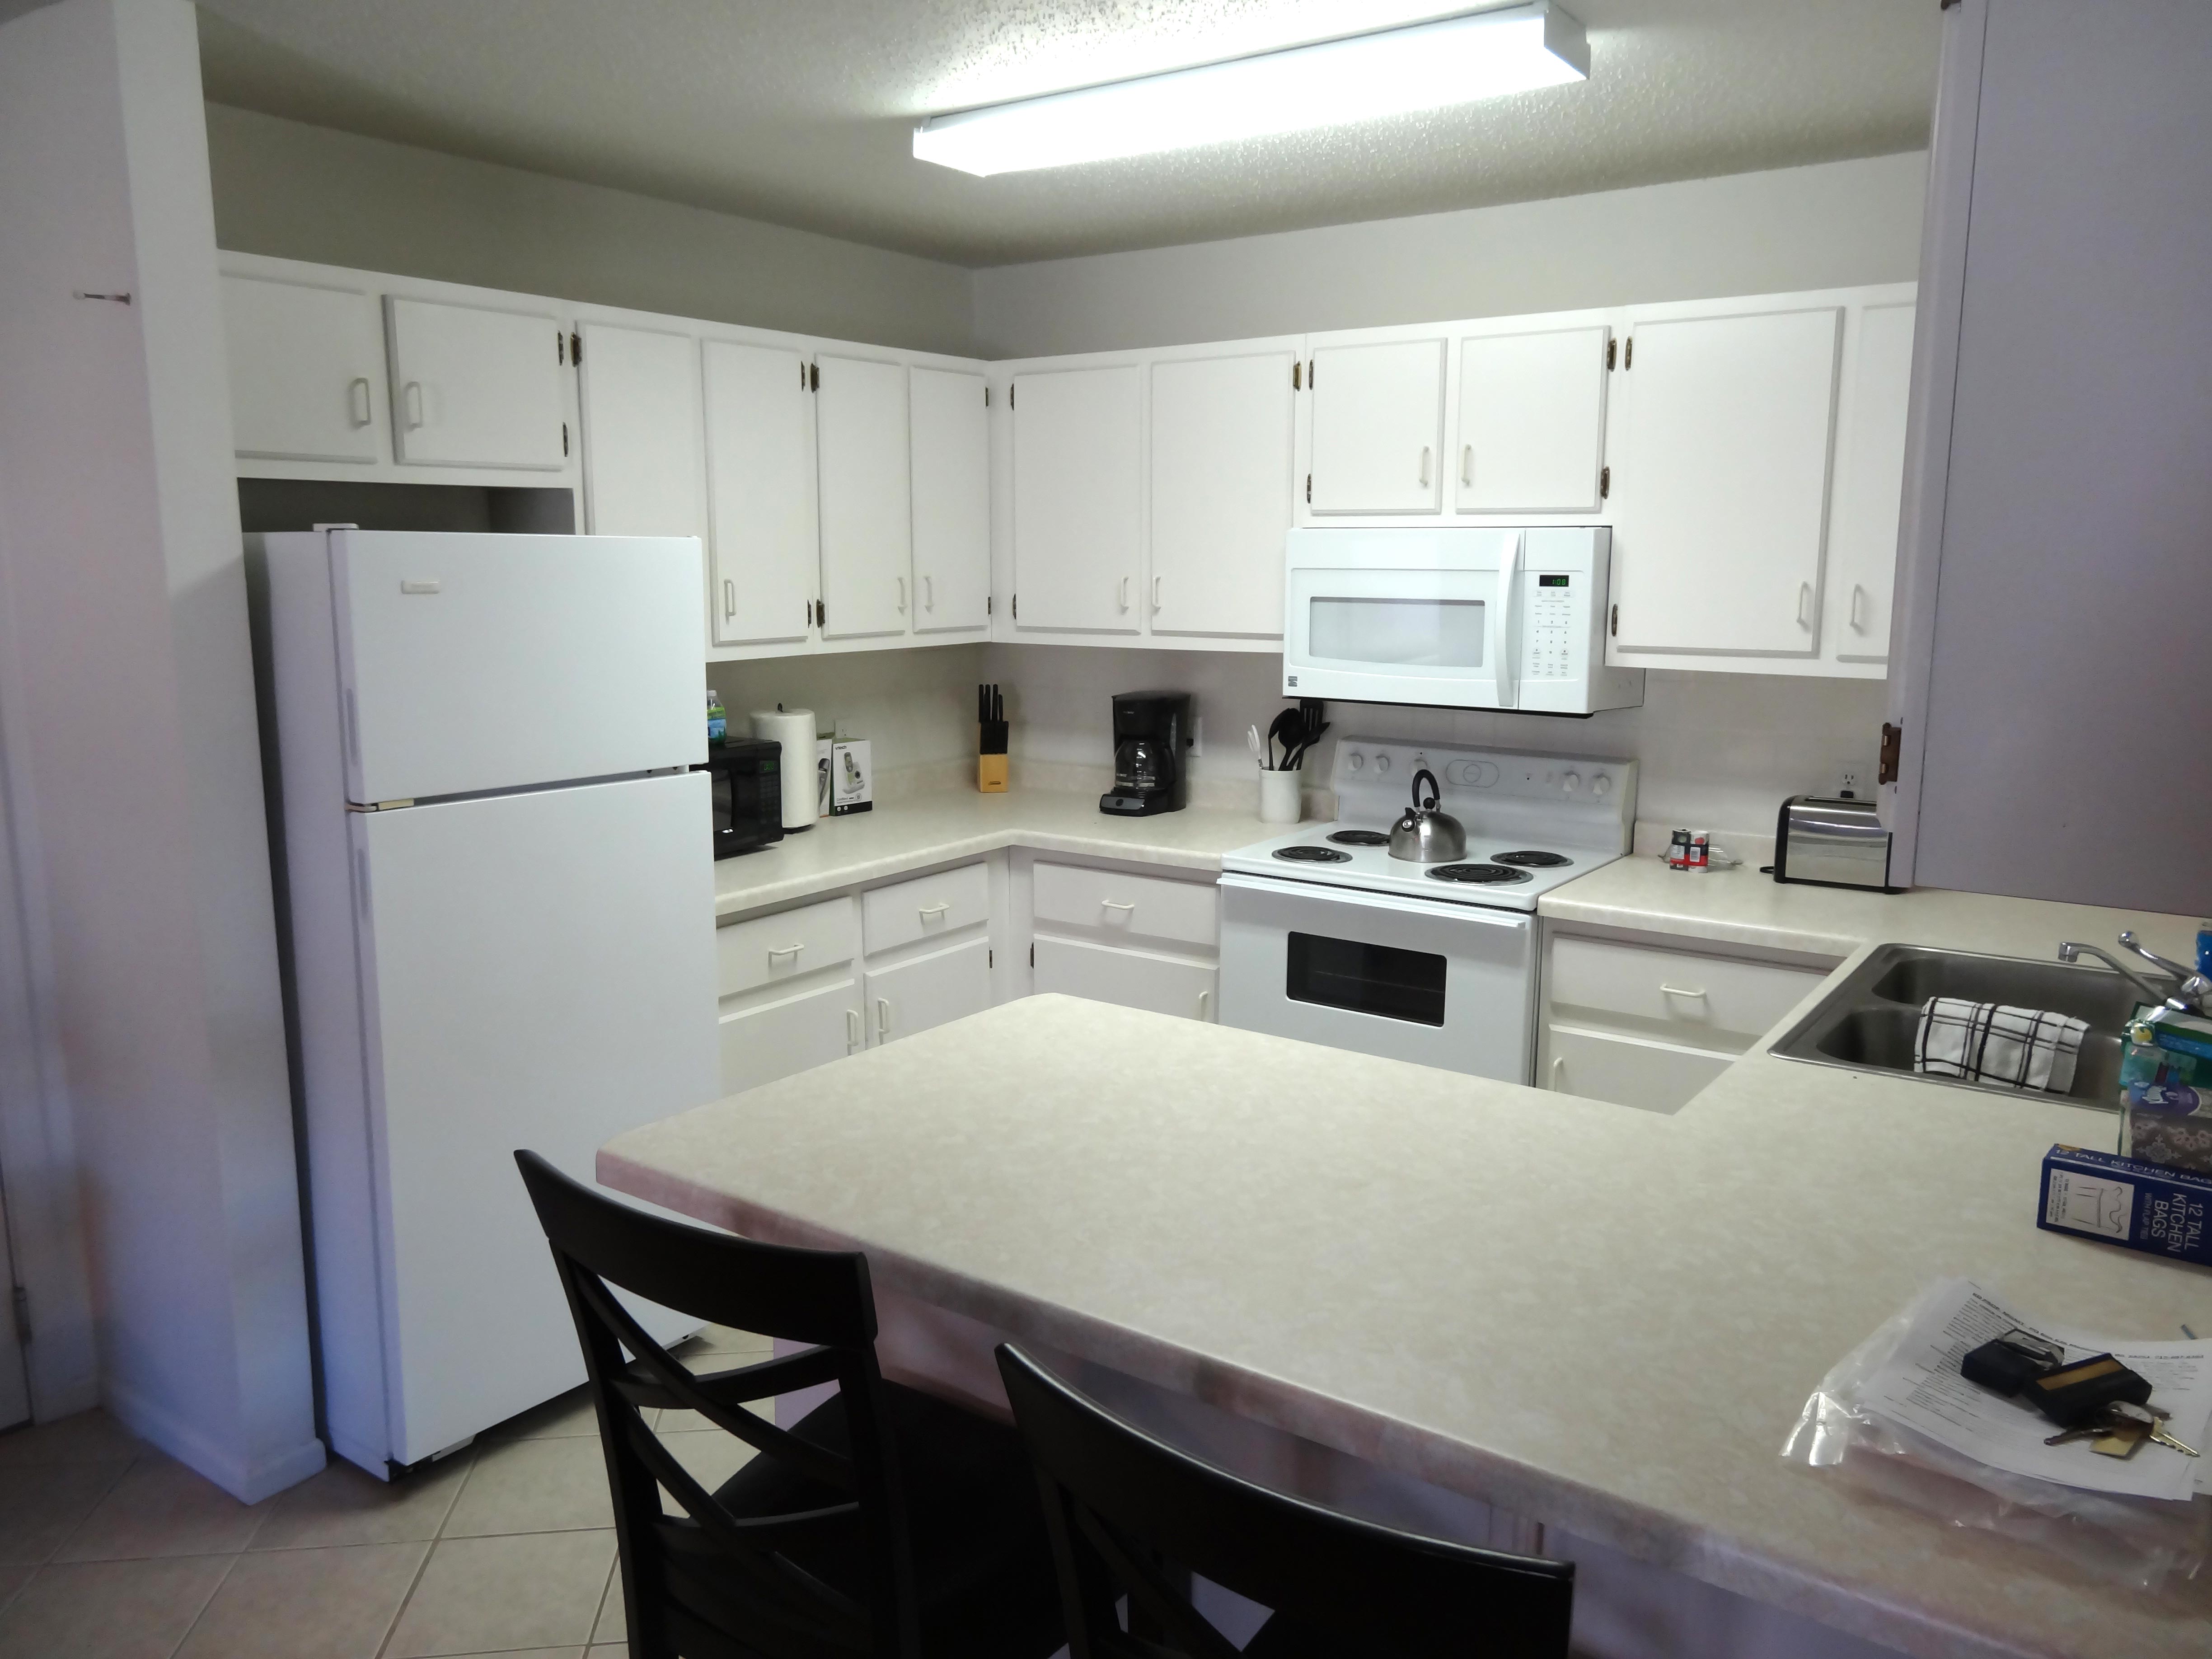 white-kitchen-fridge-stove-cabinets